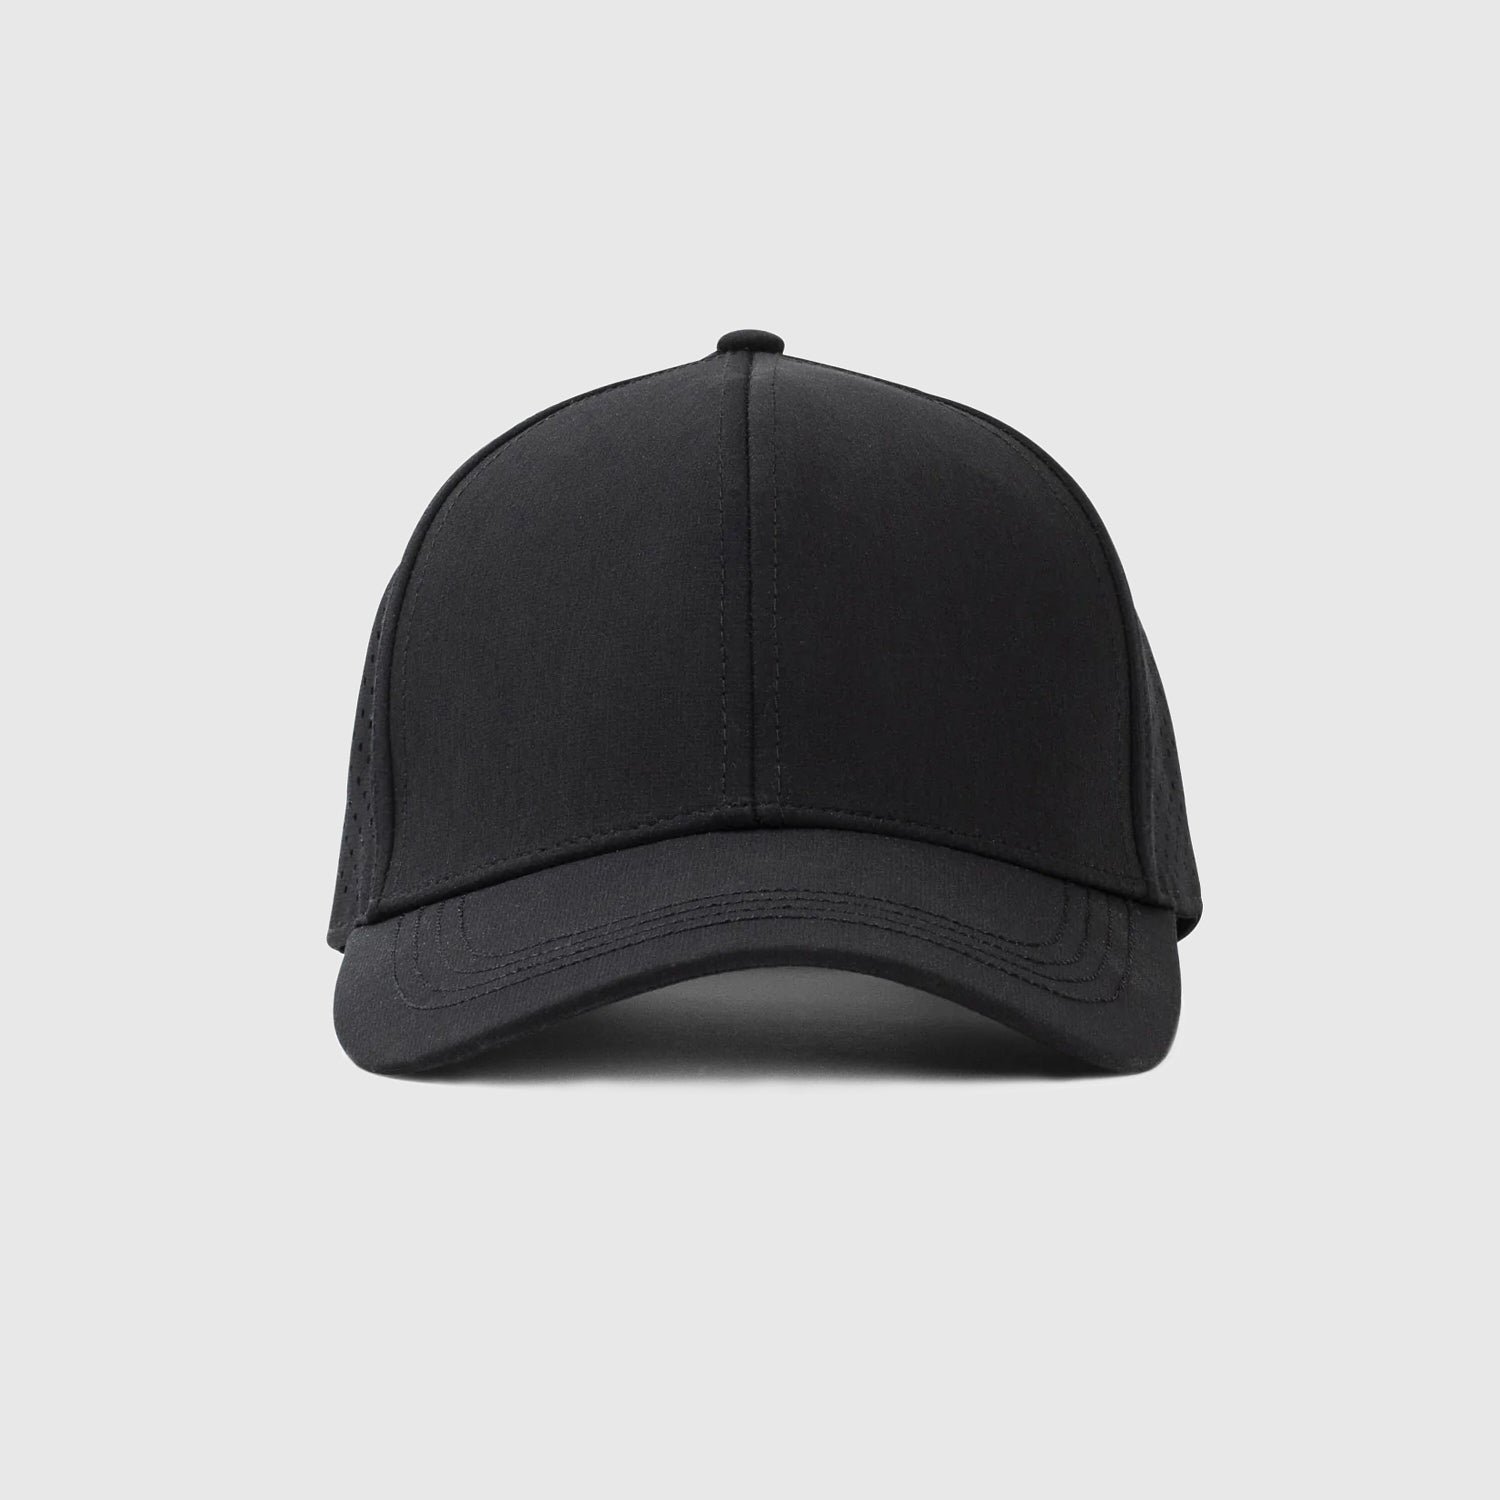 Black All Purpose Cap